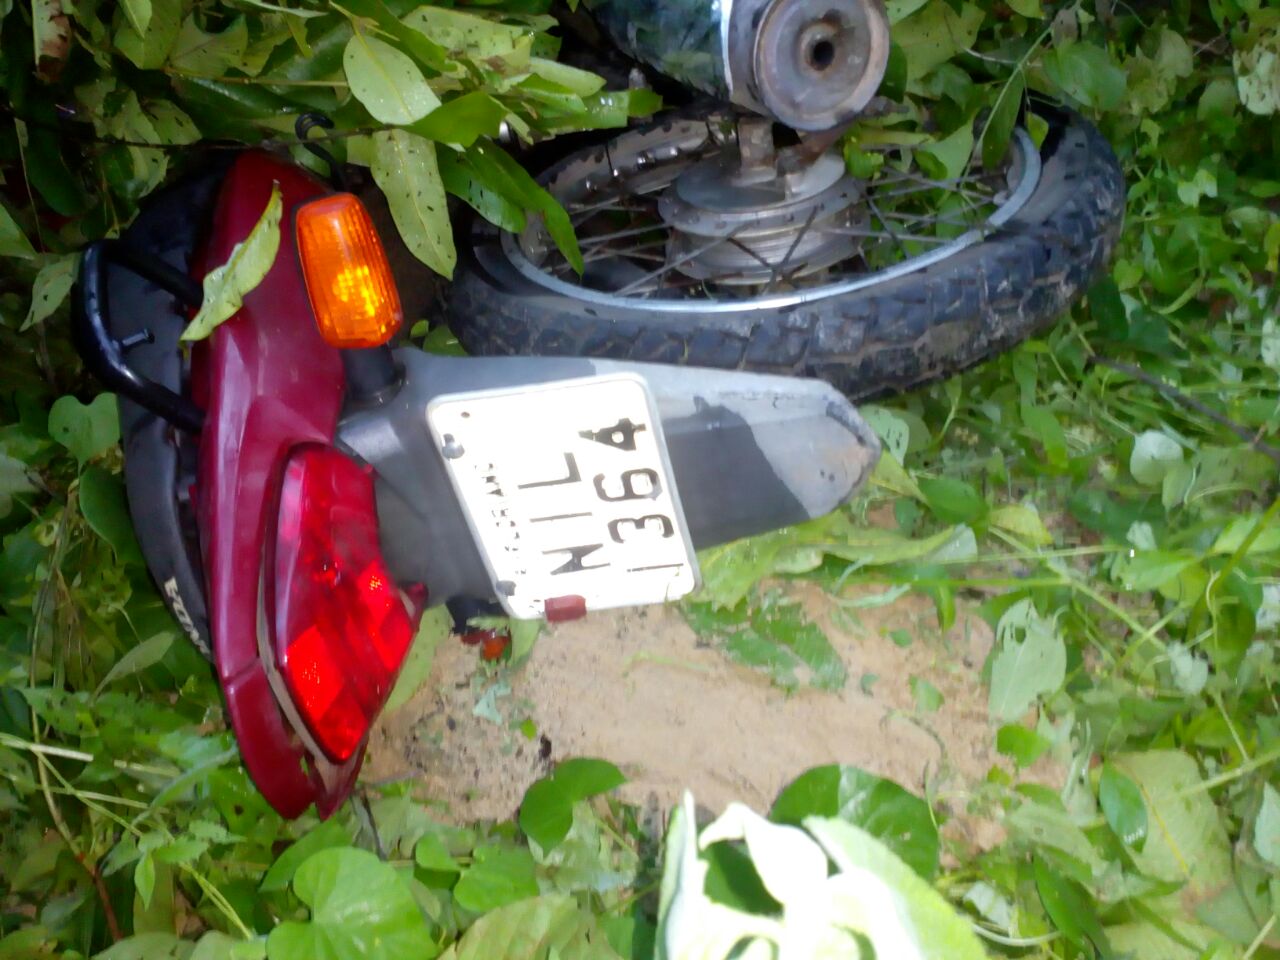 Motocicleta apreendida com o suspeito foi utilizada na fuga e no assalto.